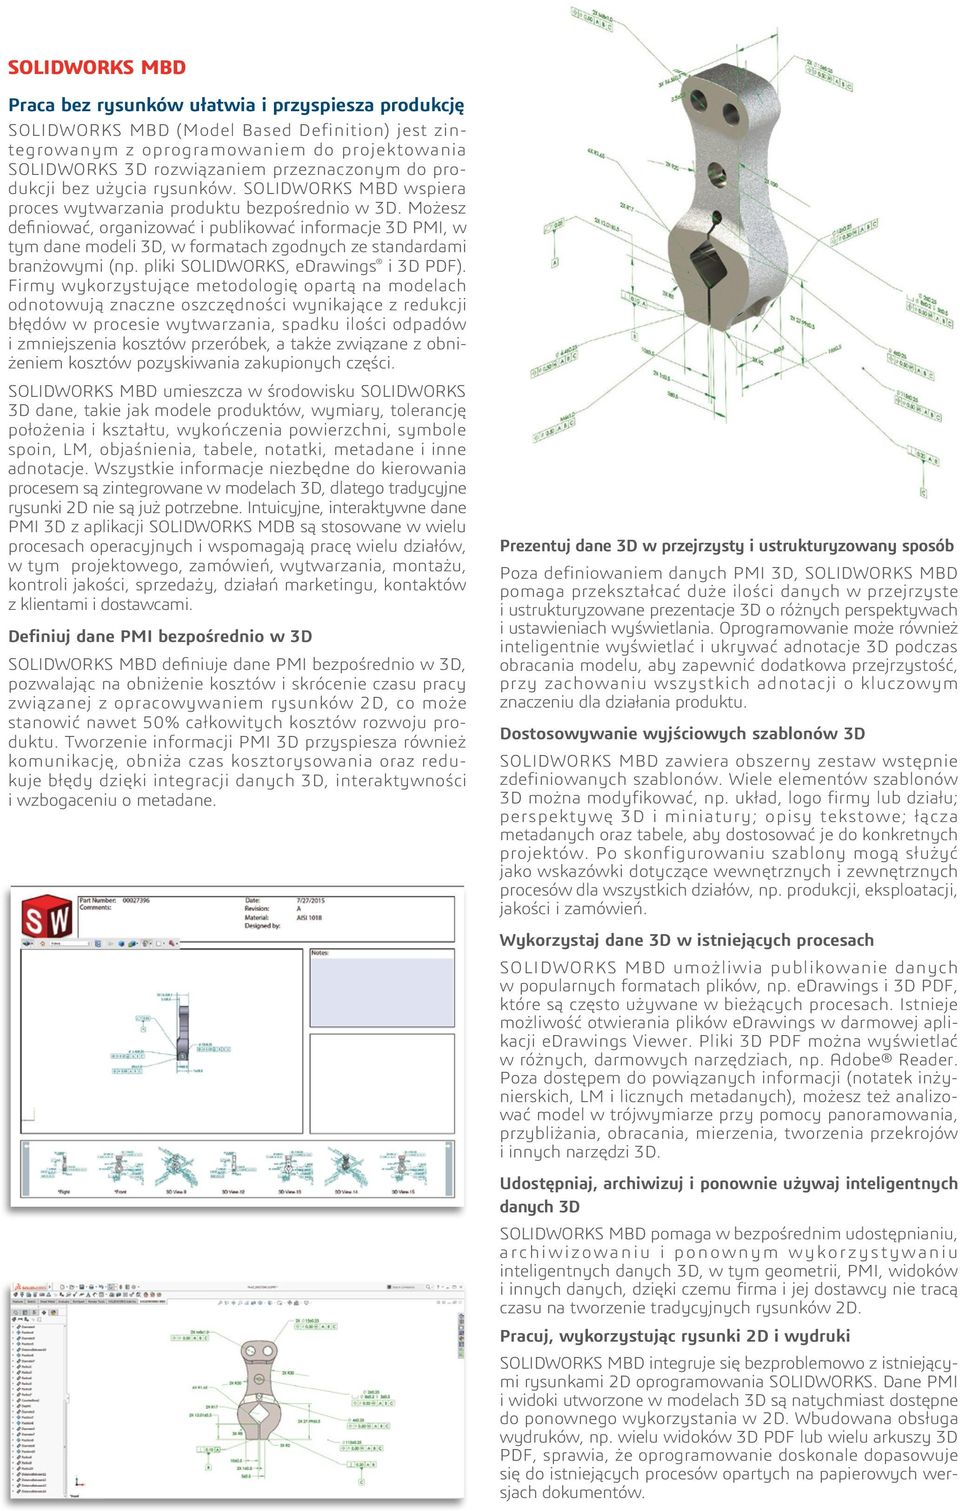 Możesz definiować, organizować i publikować informacje 3D PMI, w tym dane modeli 3D, w formatach zgodnych ze standardami branżowymi (np. pliki SOLIDWORKS, edrawings i 3D PDF).